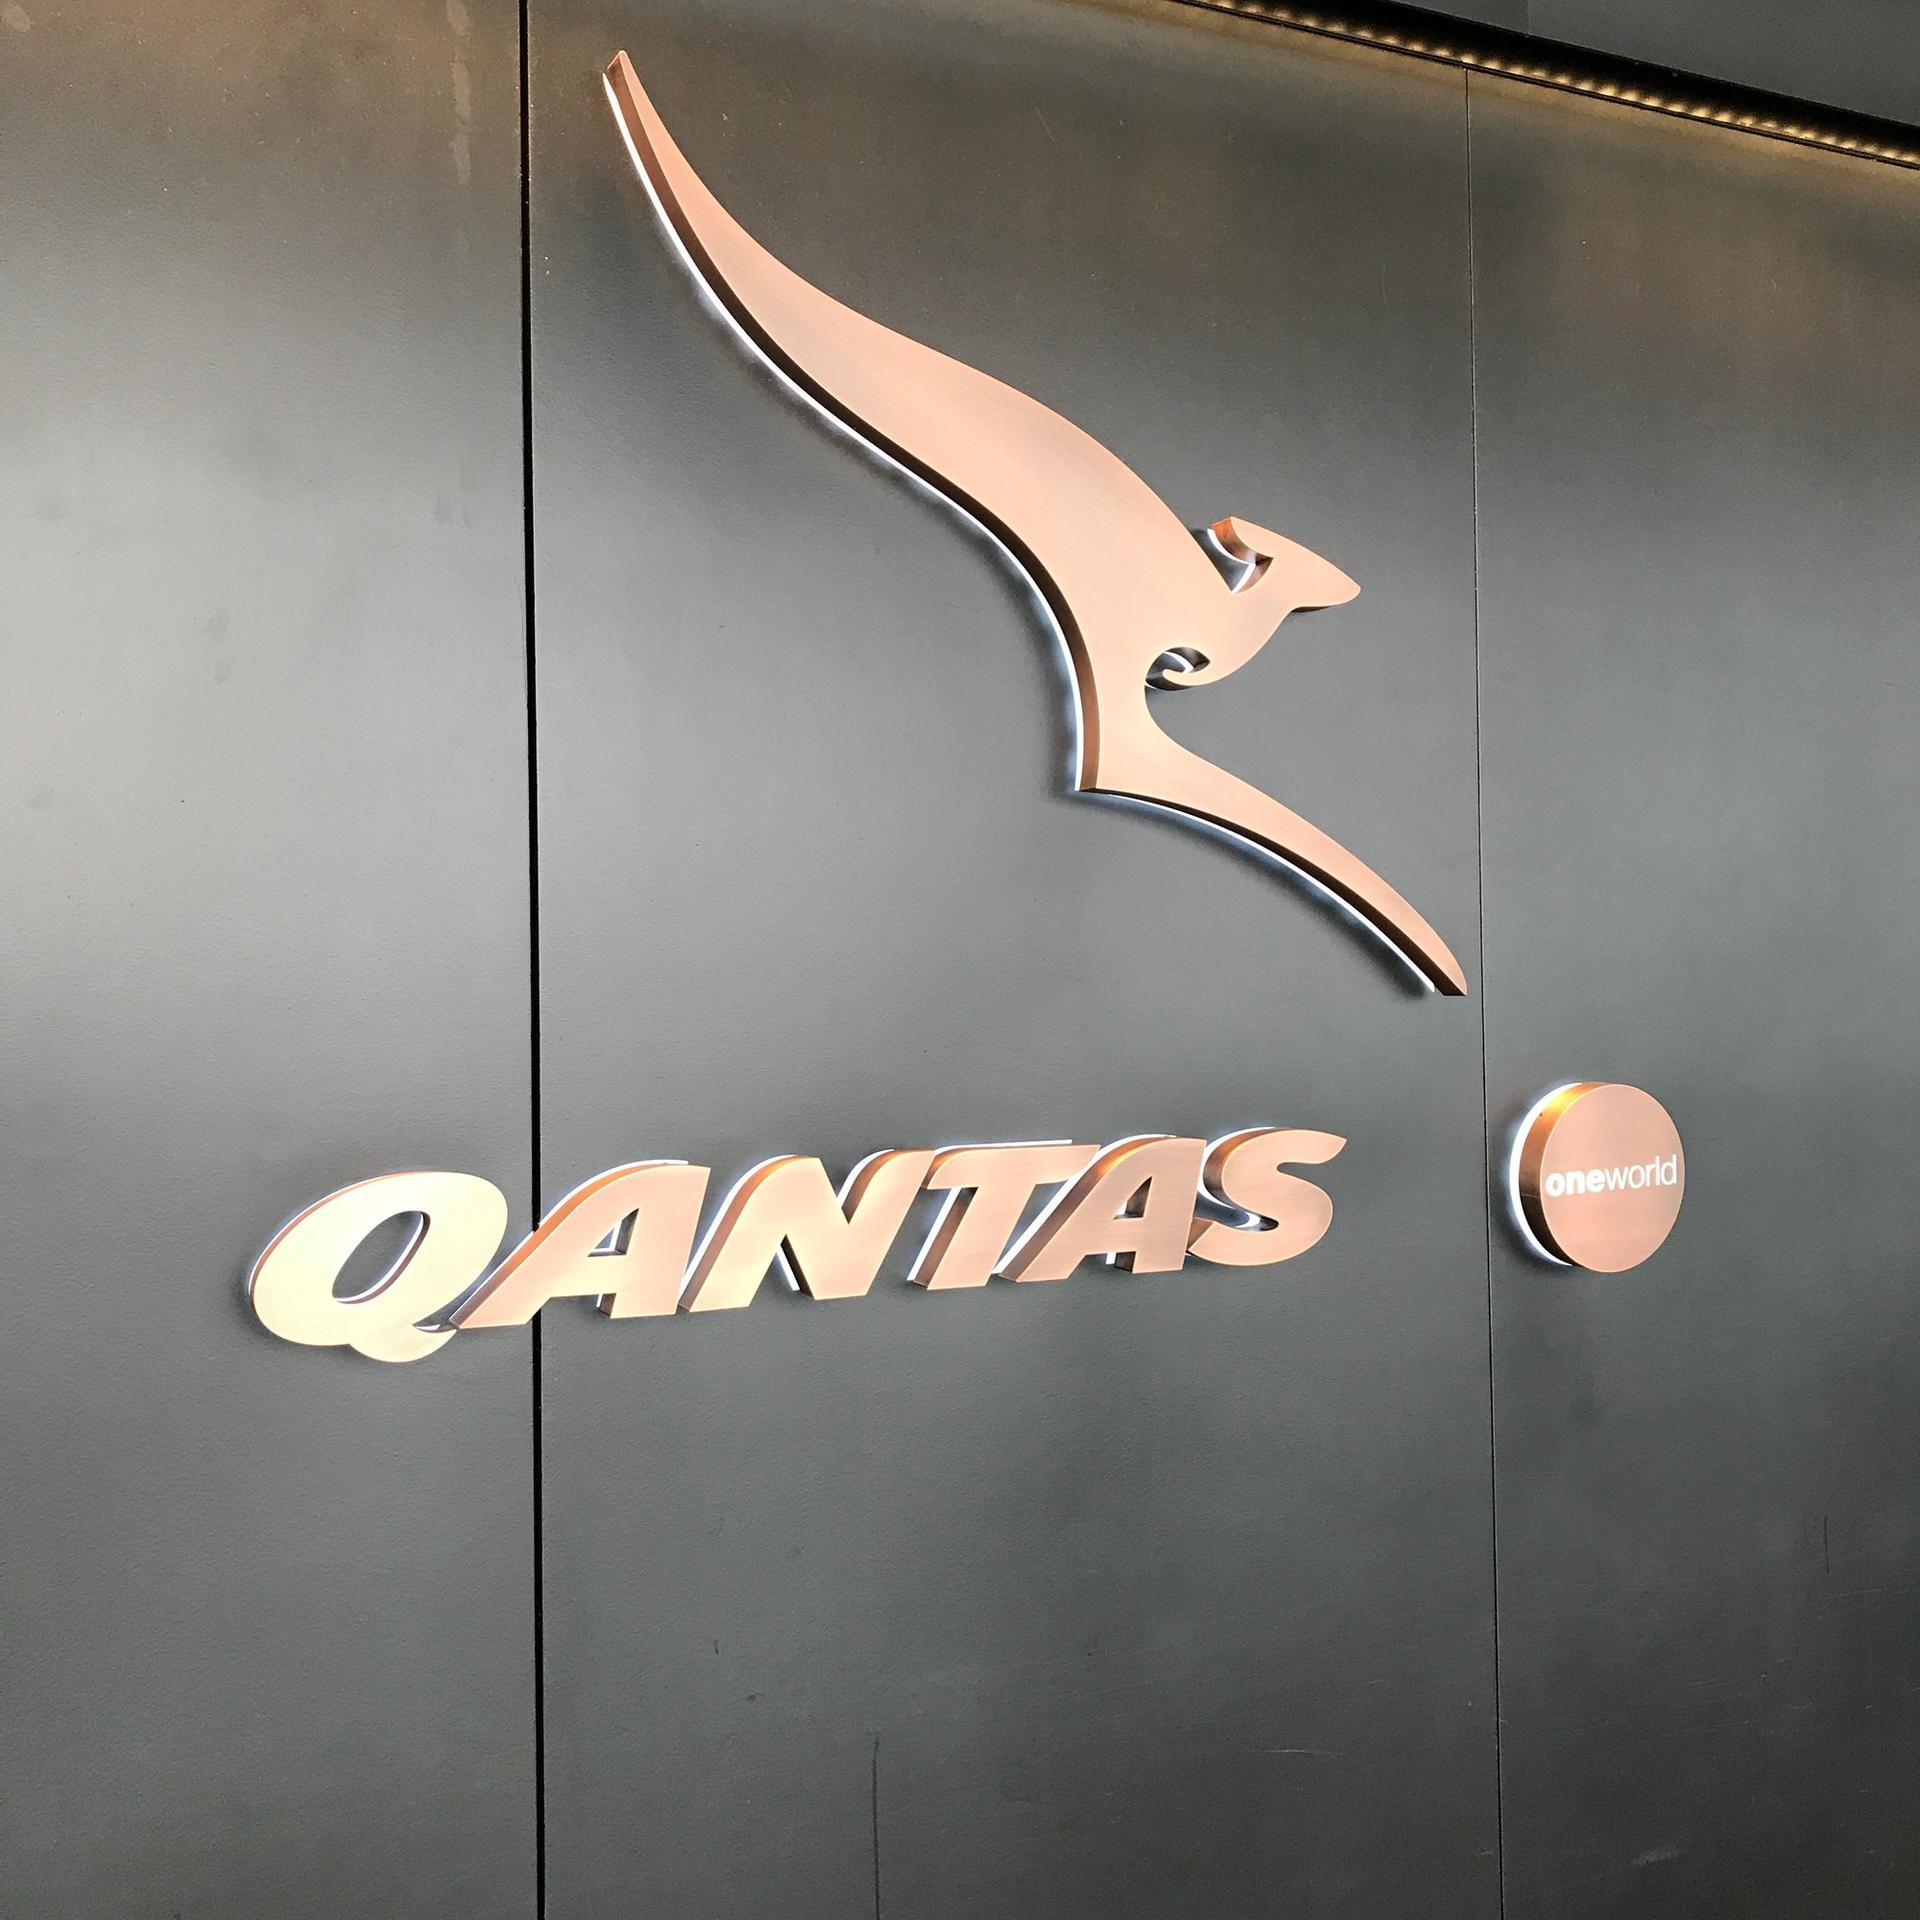 The Qantas Hong Kong Lounge image 86 of 99